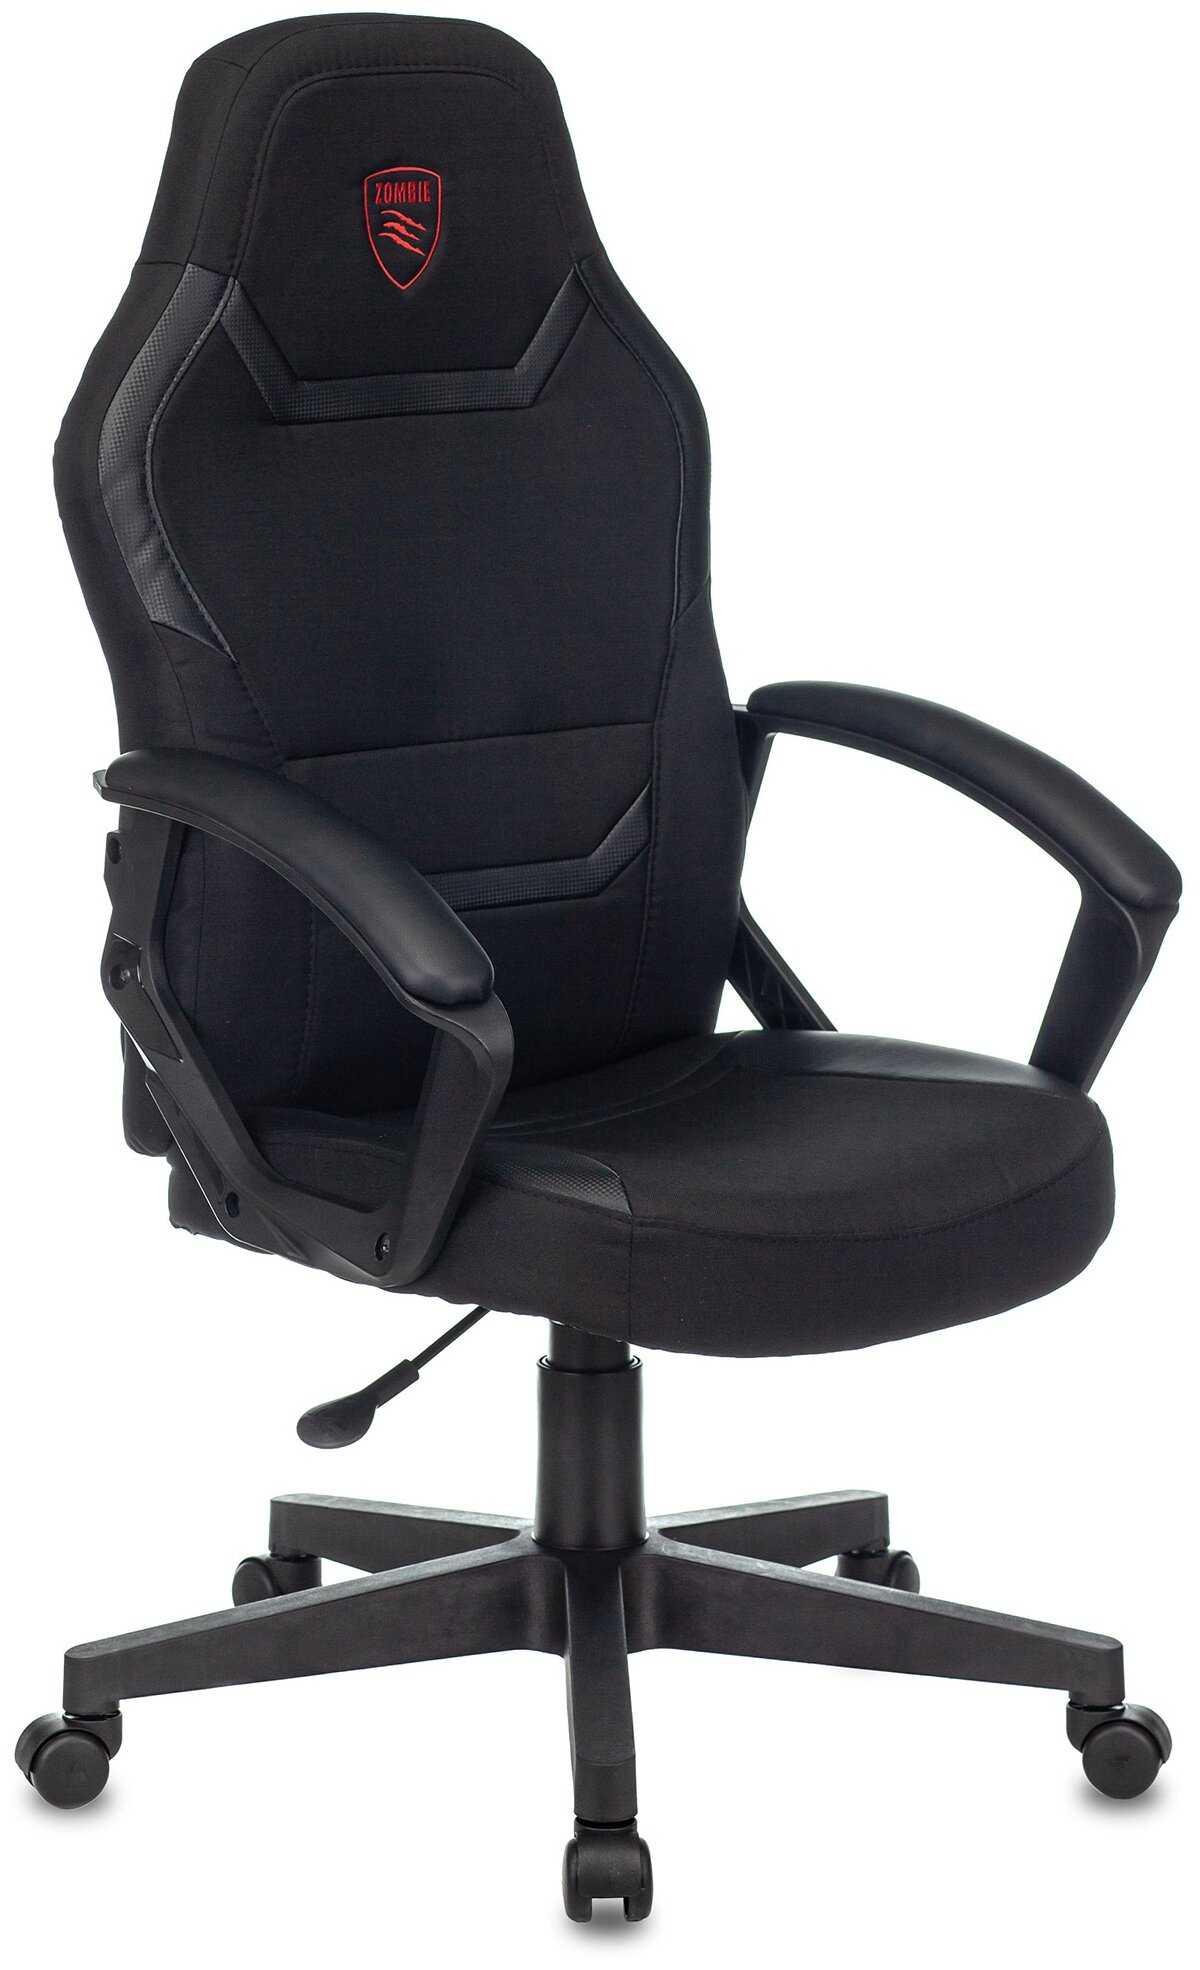 Кресло игровое Zombie 10, обивка: текстиль/эко. кожа, цвет: черный